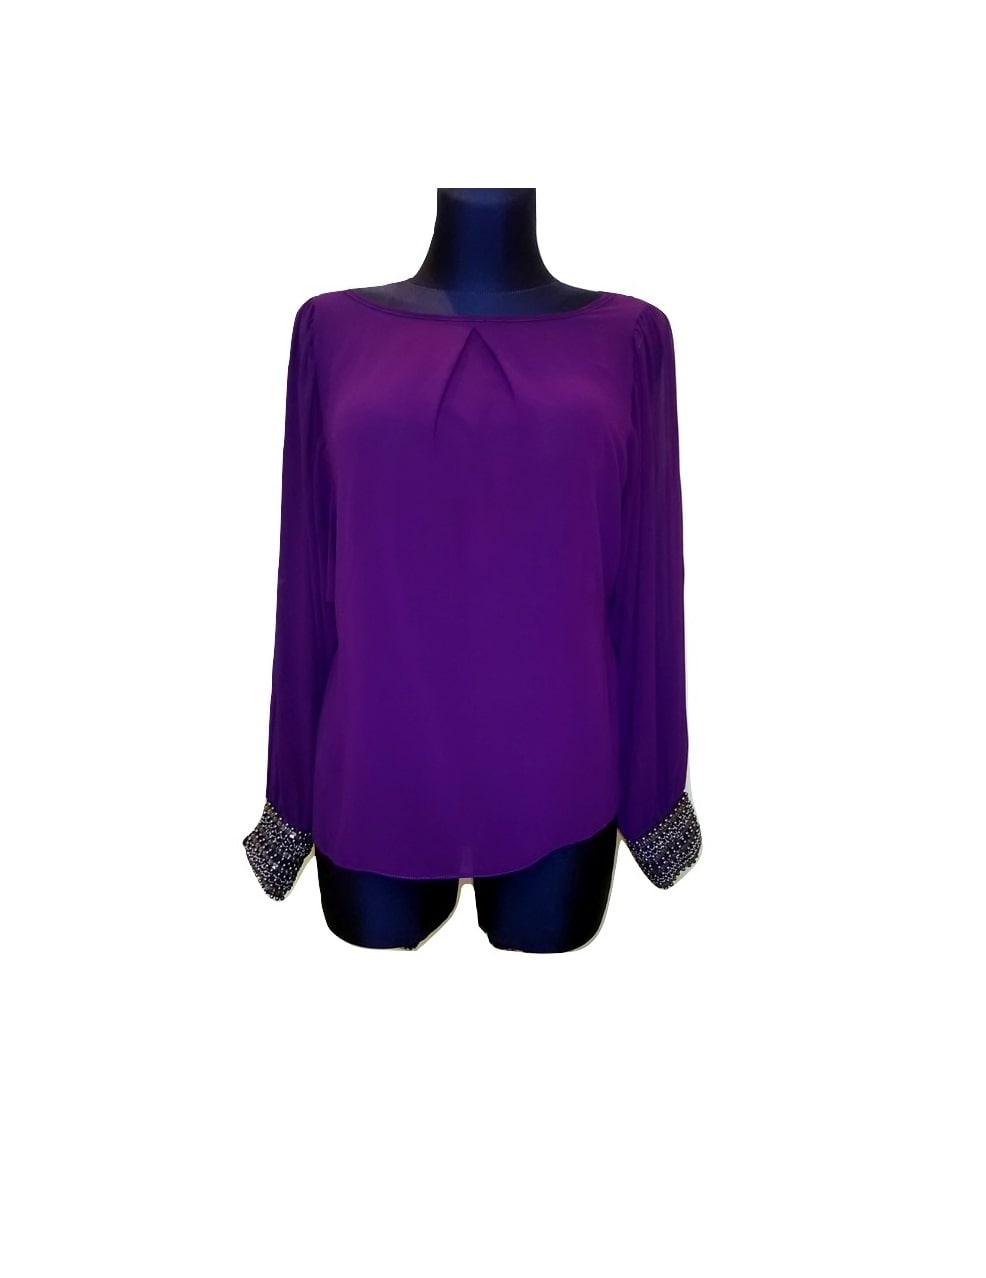 Moteriška lengva violetinė palaidinė ilgomis rankovėmis, DOROTHY PERKINS, 38 dydis